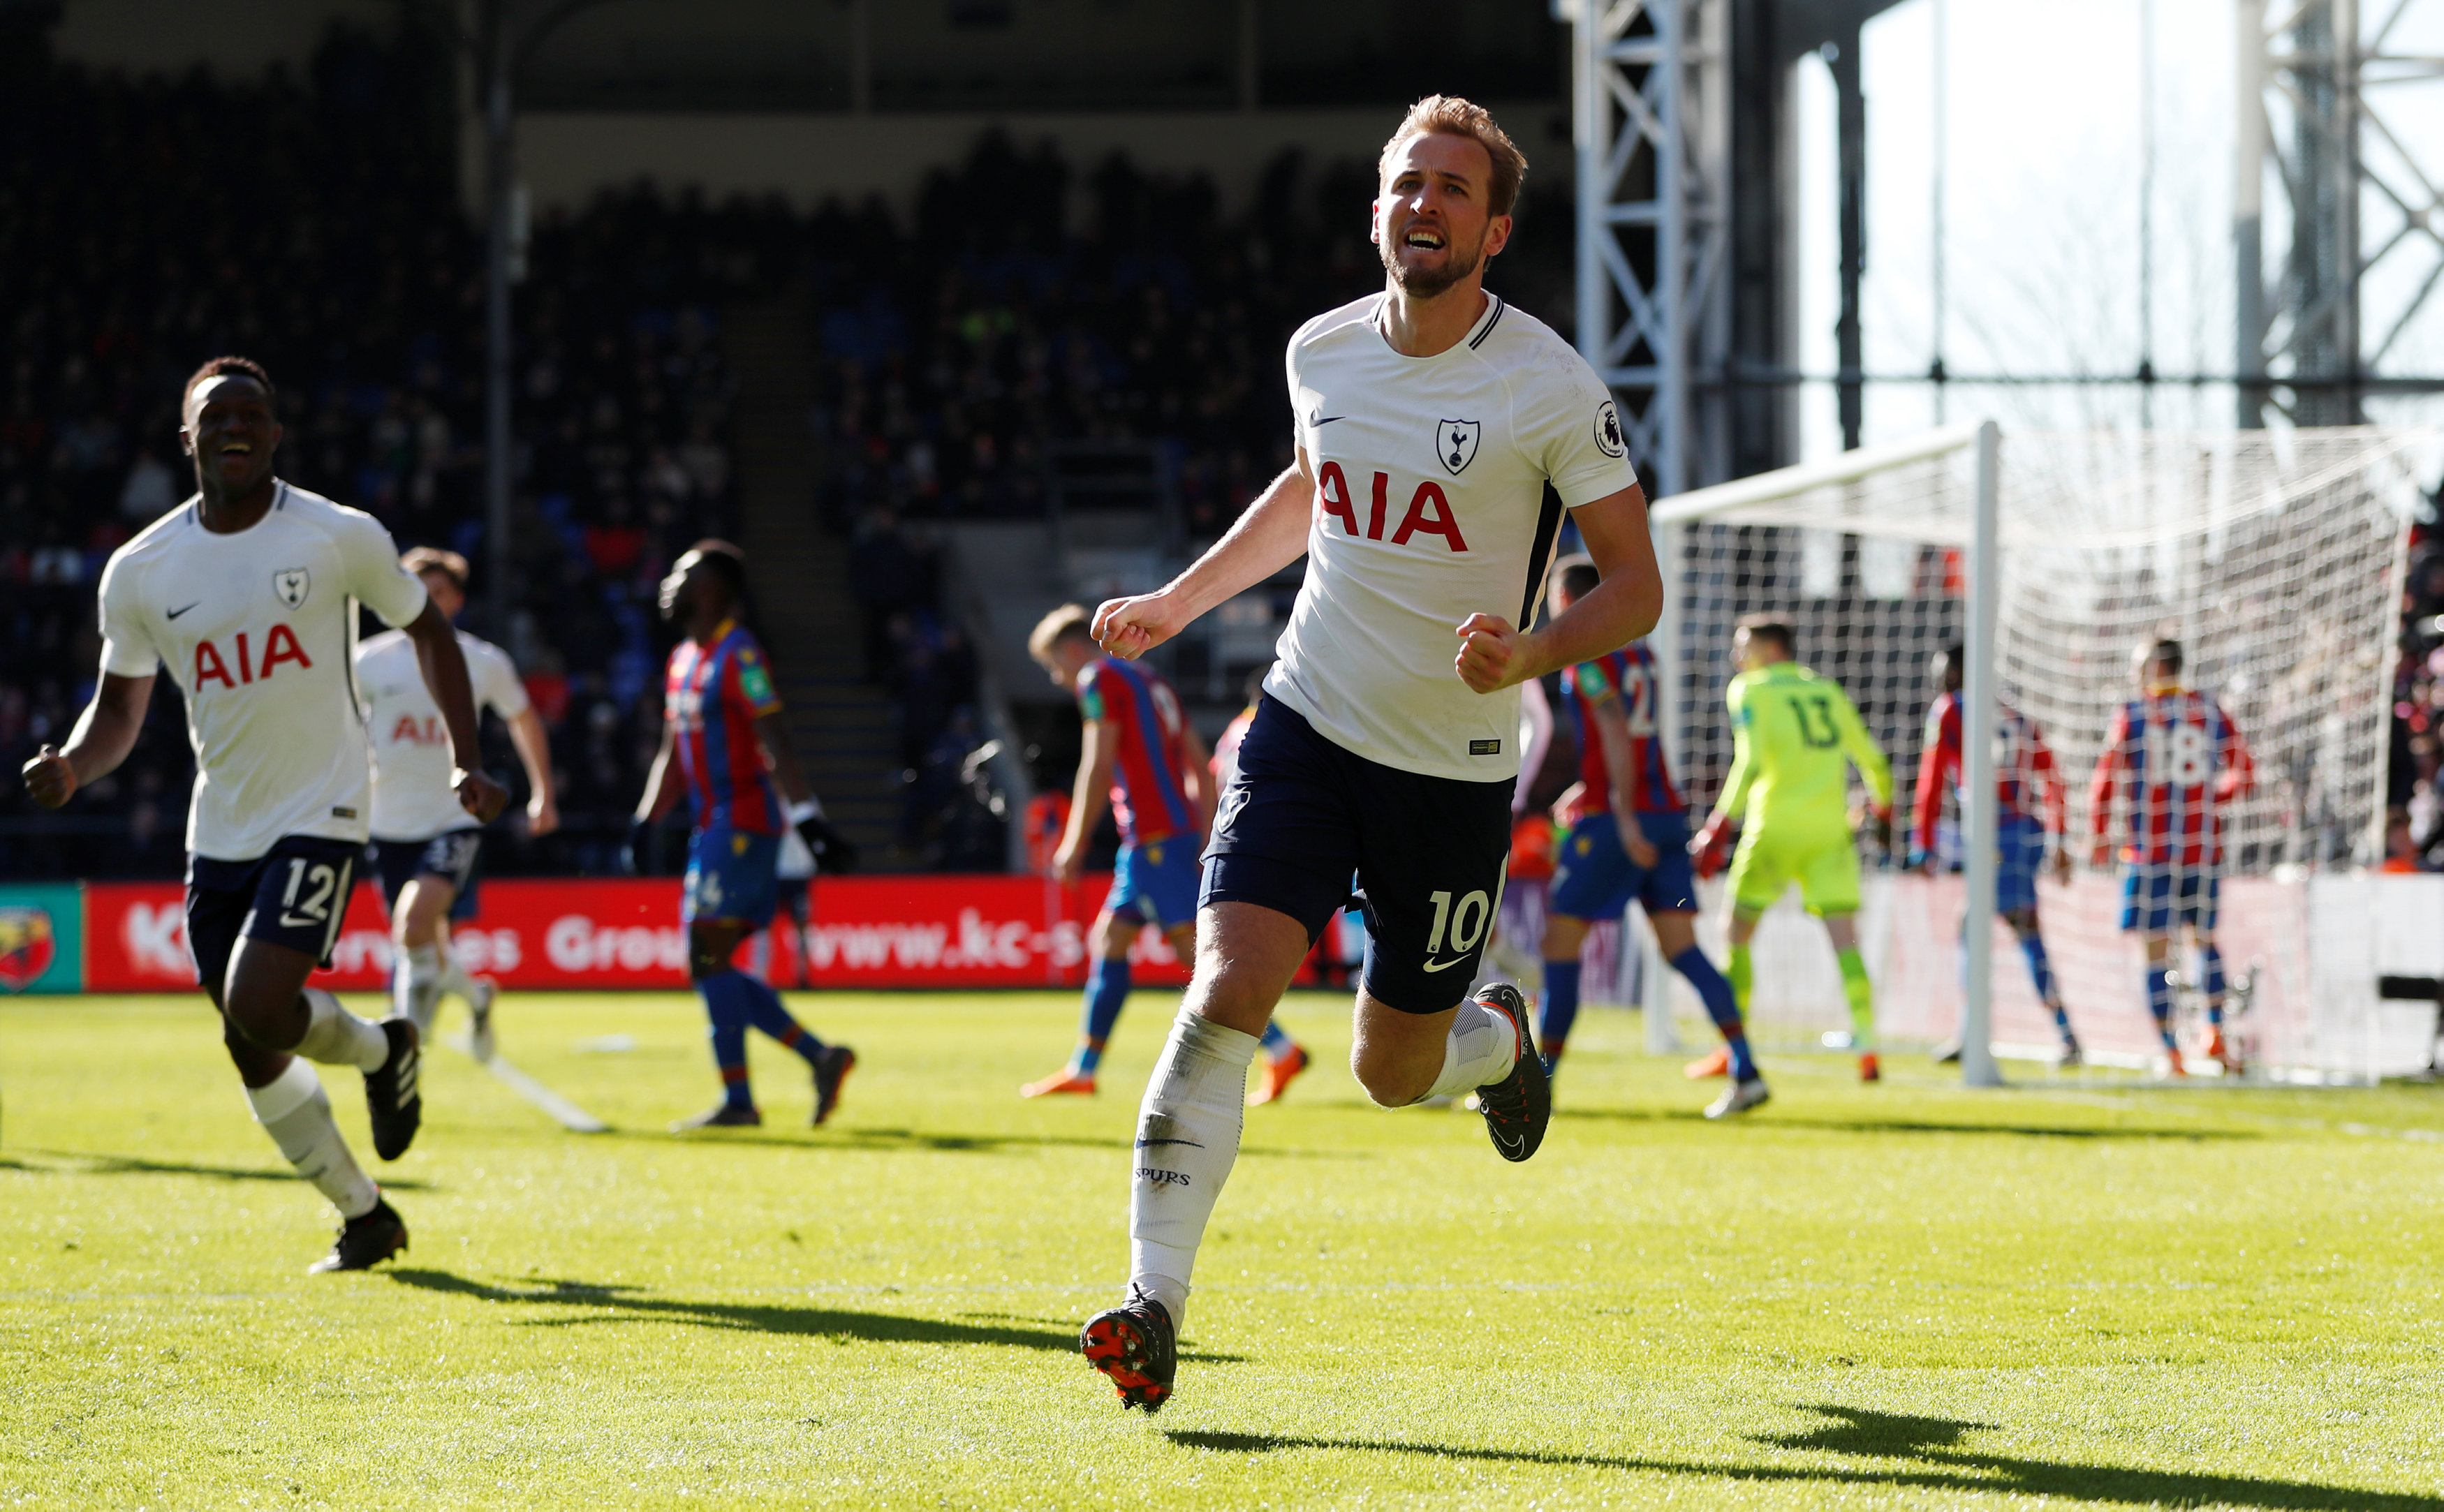 Kane's late header gives Tottenham victory at Palace